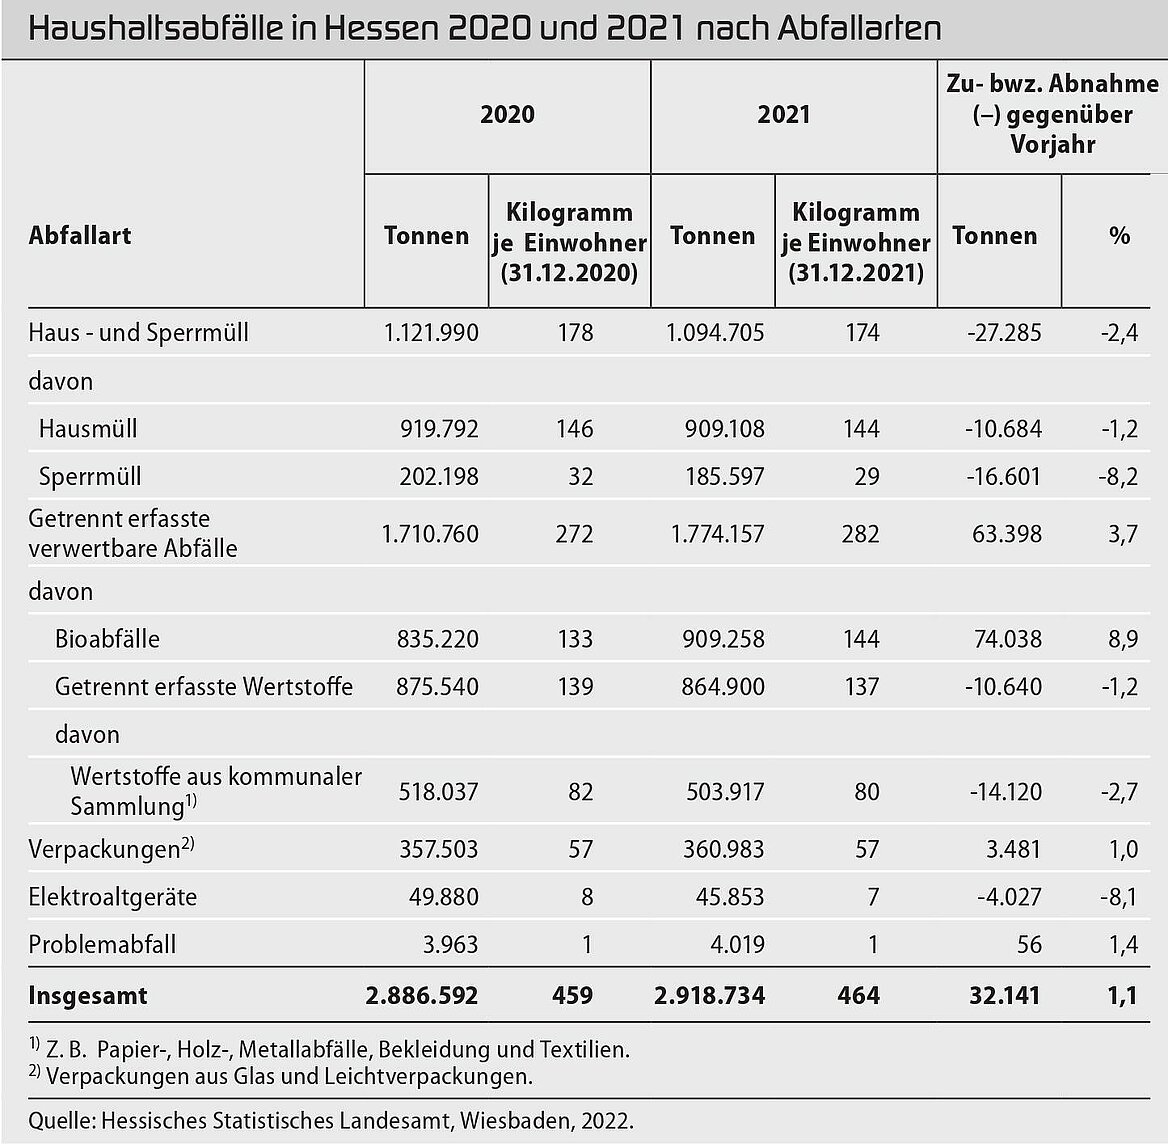 Tabelle der Haushaltsabfälle in Hessen 2020 und 2021 nach Abfallarten.